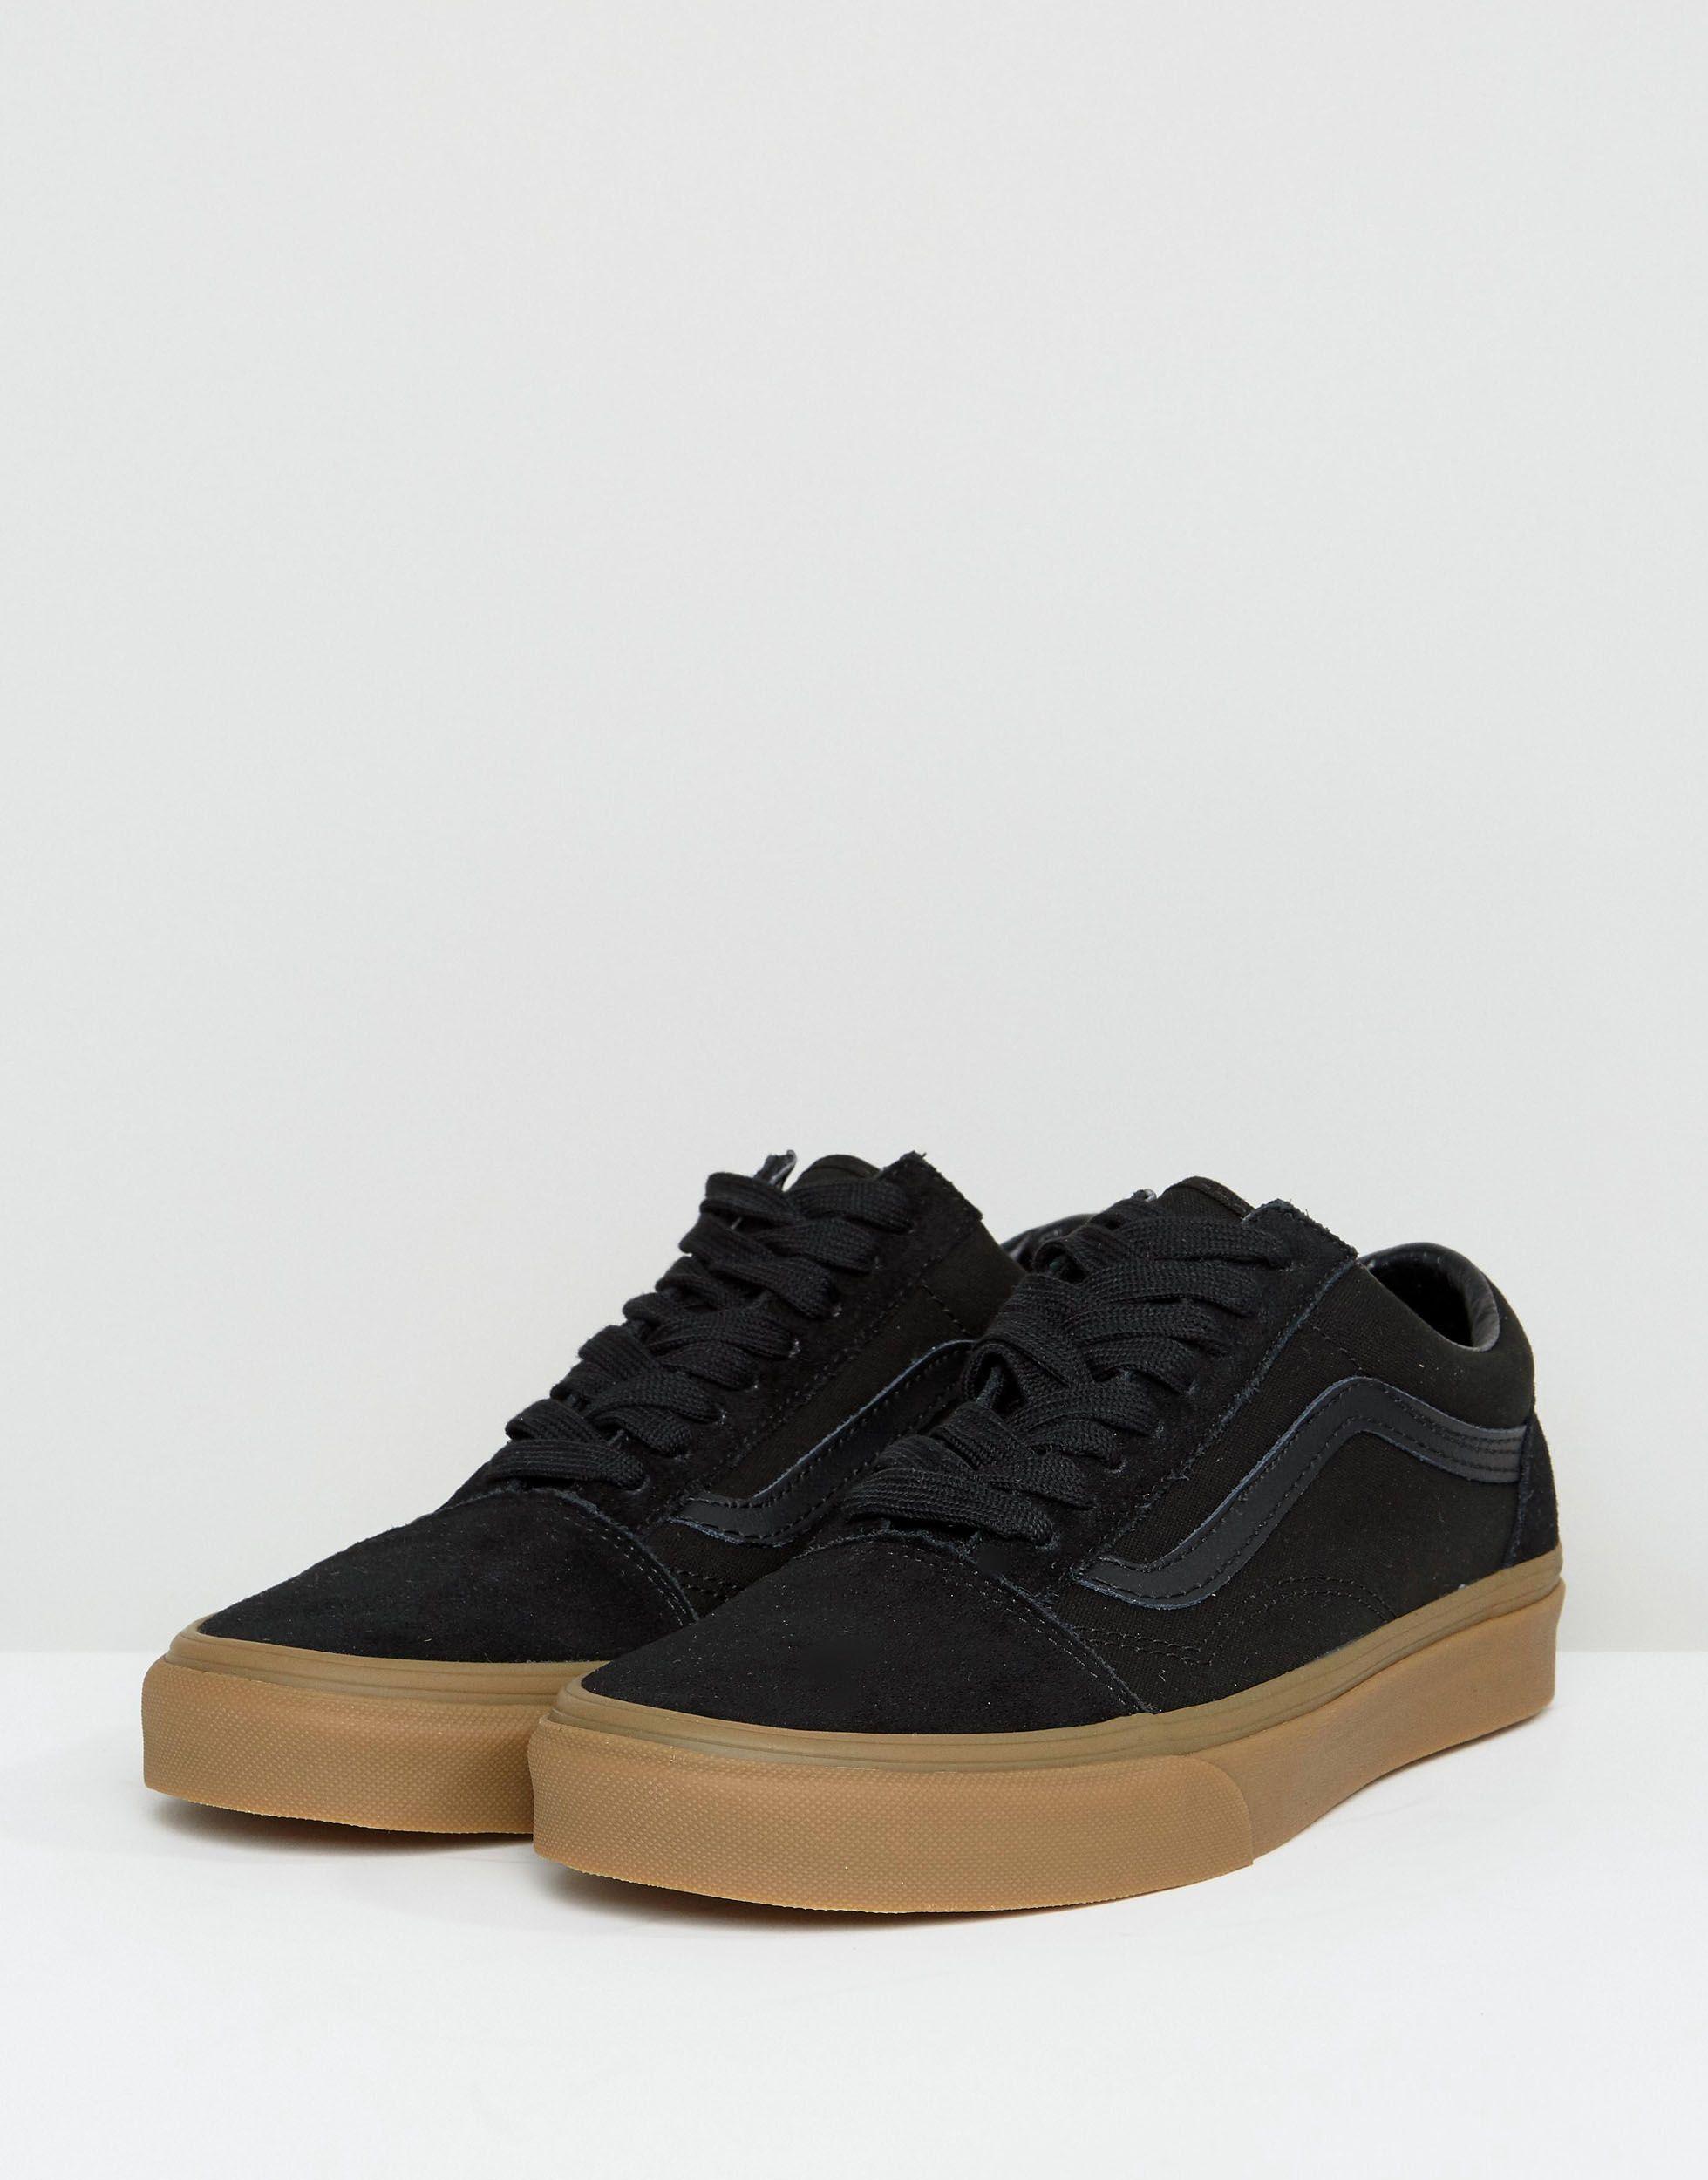 Vans Old Skool Sneakers With Gum Sole In Black Va38g1poa for Men - Lyst